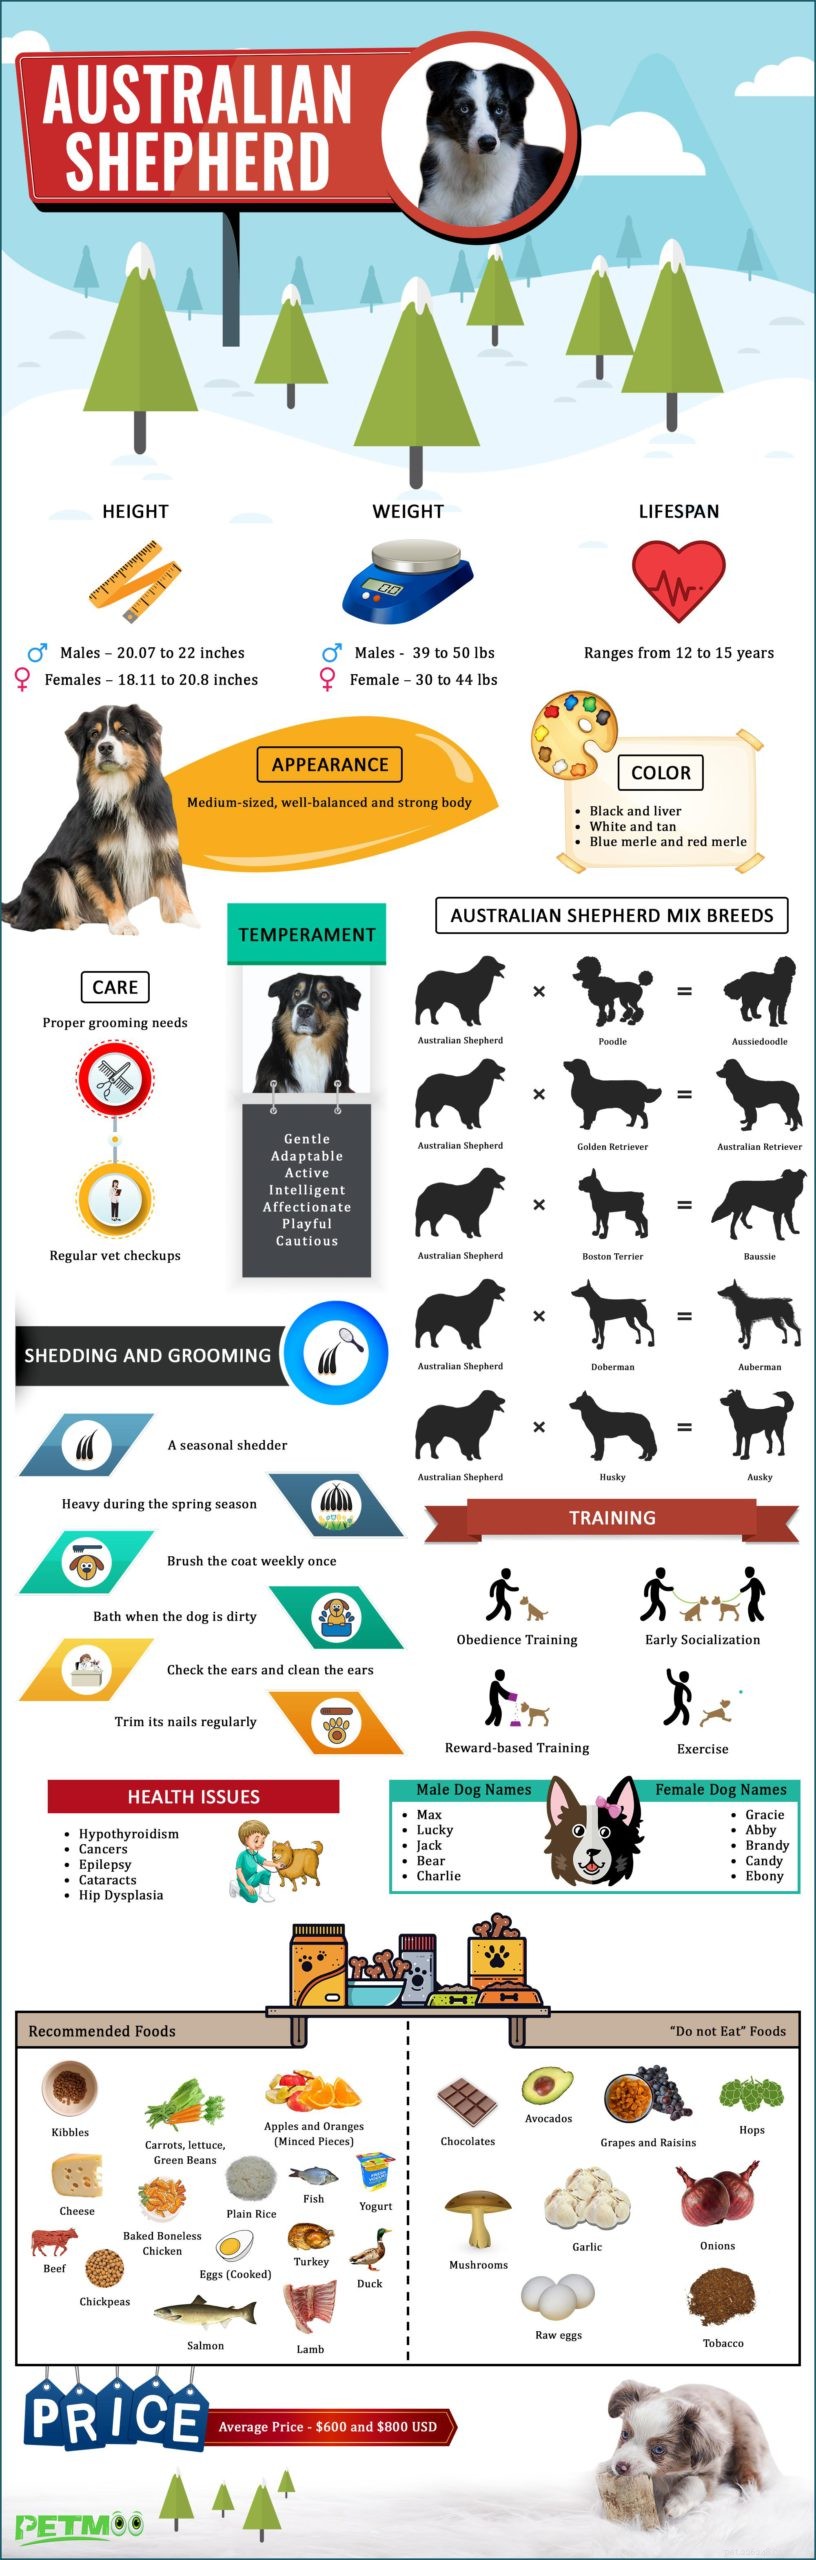 Cucciolo di pastore australiano – Informazioni sulla razza canina